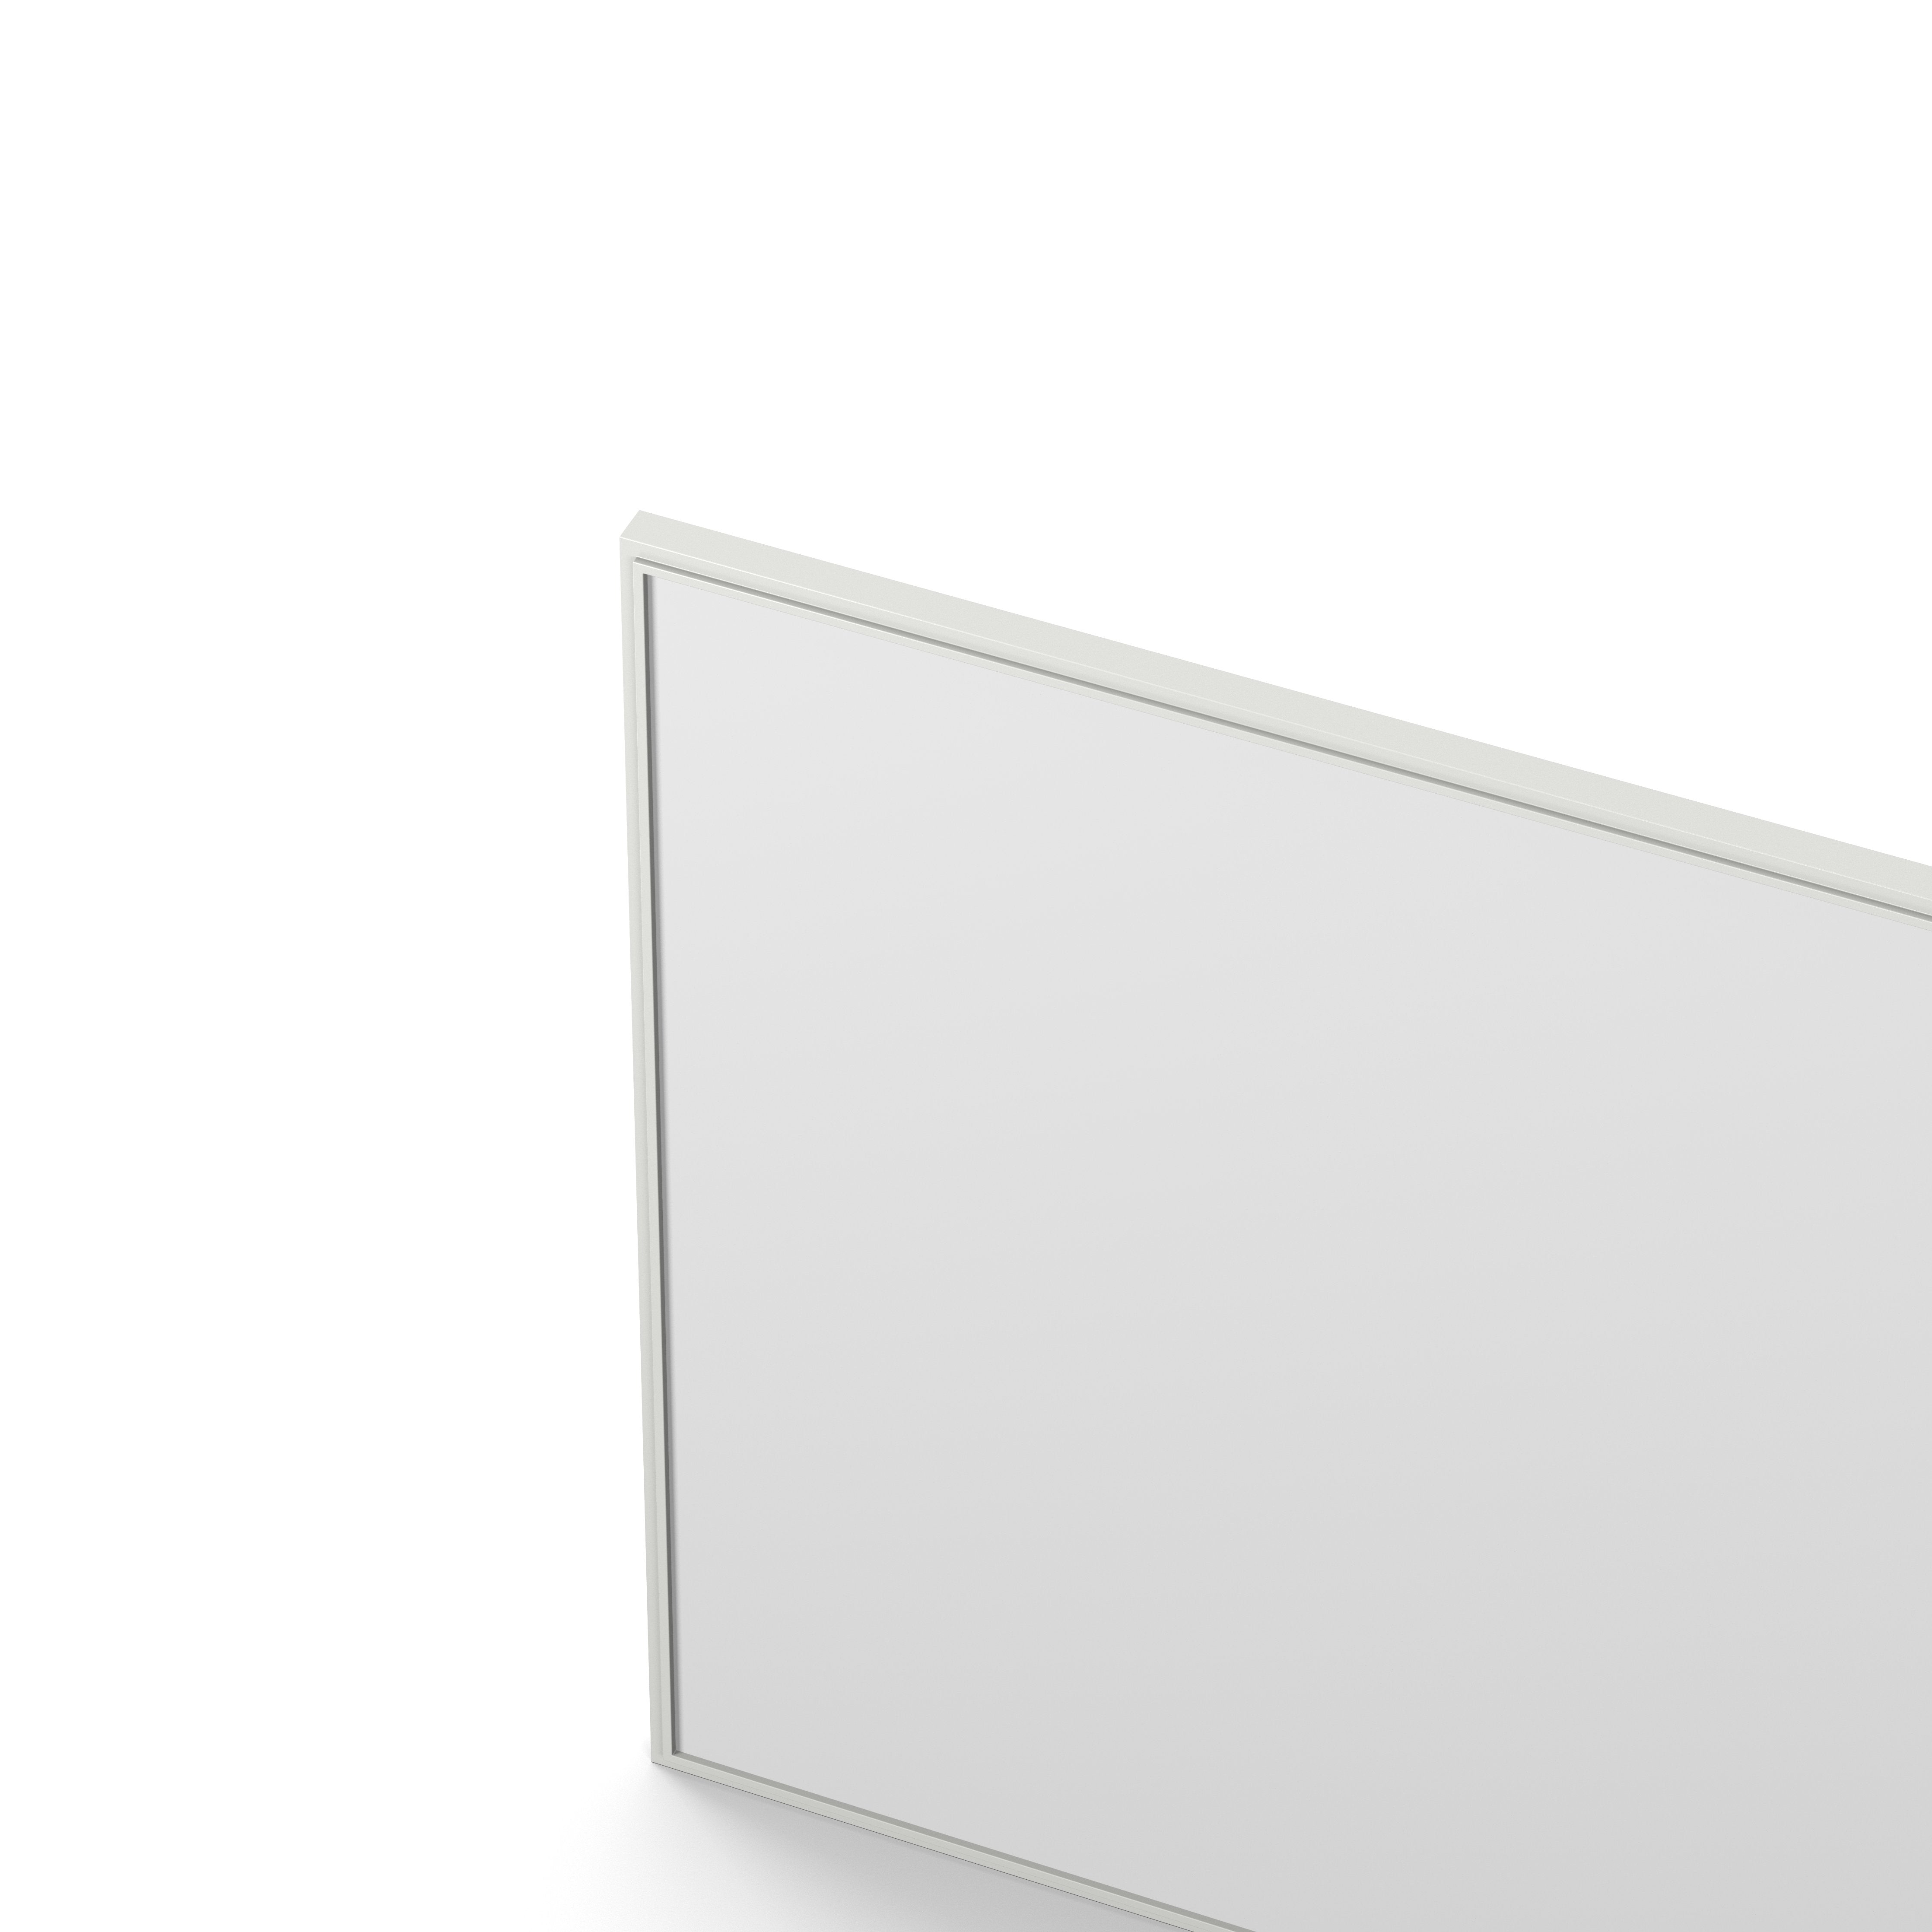 Englesson Speglar Cube Spegel Kvadratisk #Variant_Edge White 